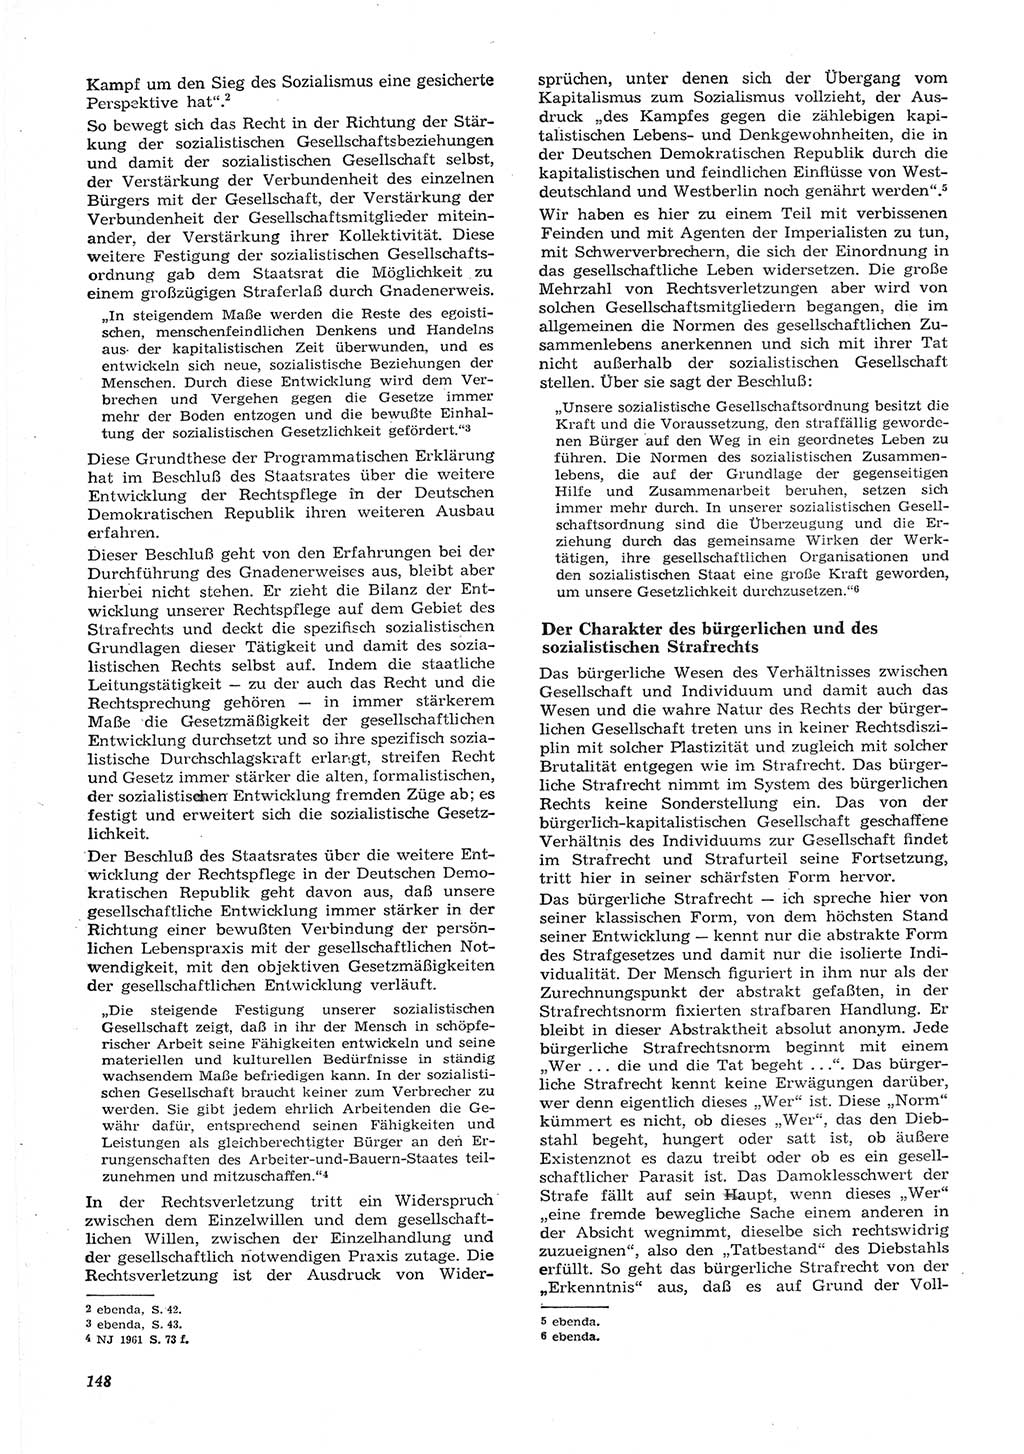 Neue Justiz (NJ), Zeitschrift für Recht und Rechtswissenschaft [Deutsche Demokratische Republik (DDR)], 15. Jahrgang 1961, Seite 148 (NJ DDR 1961, S. 148)